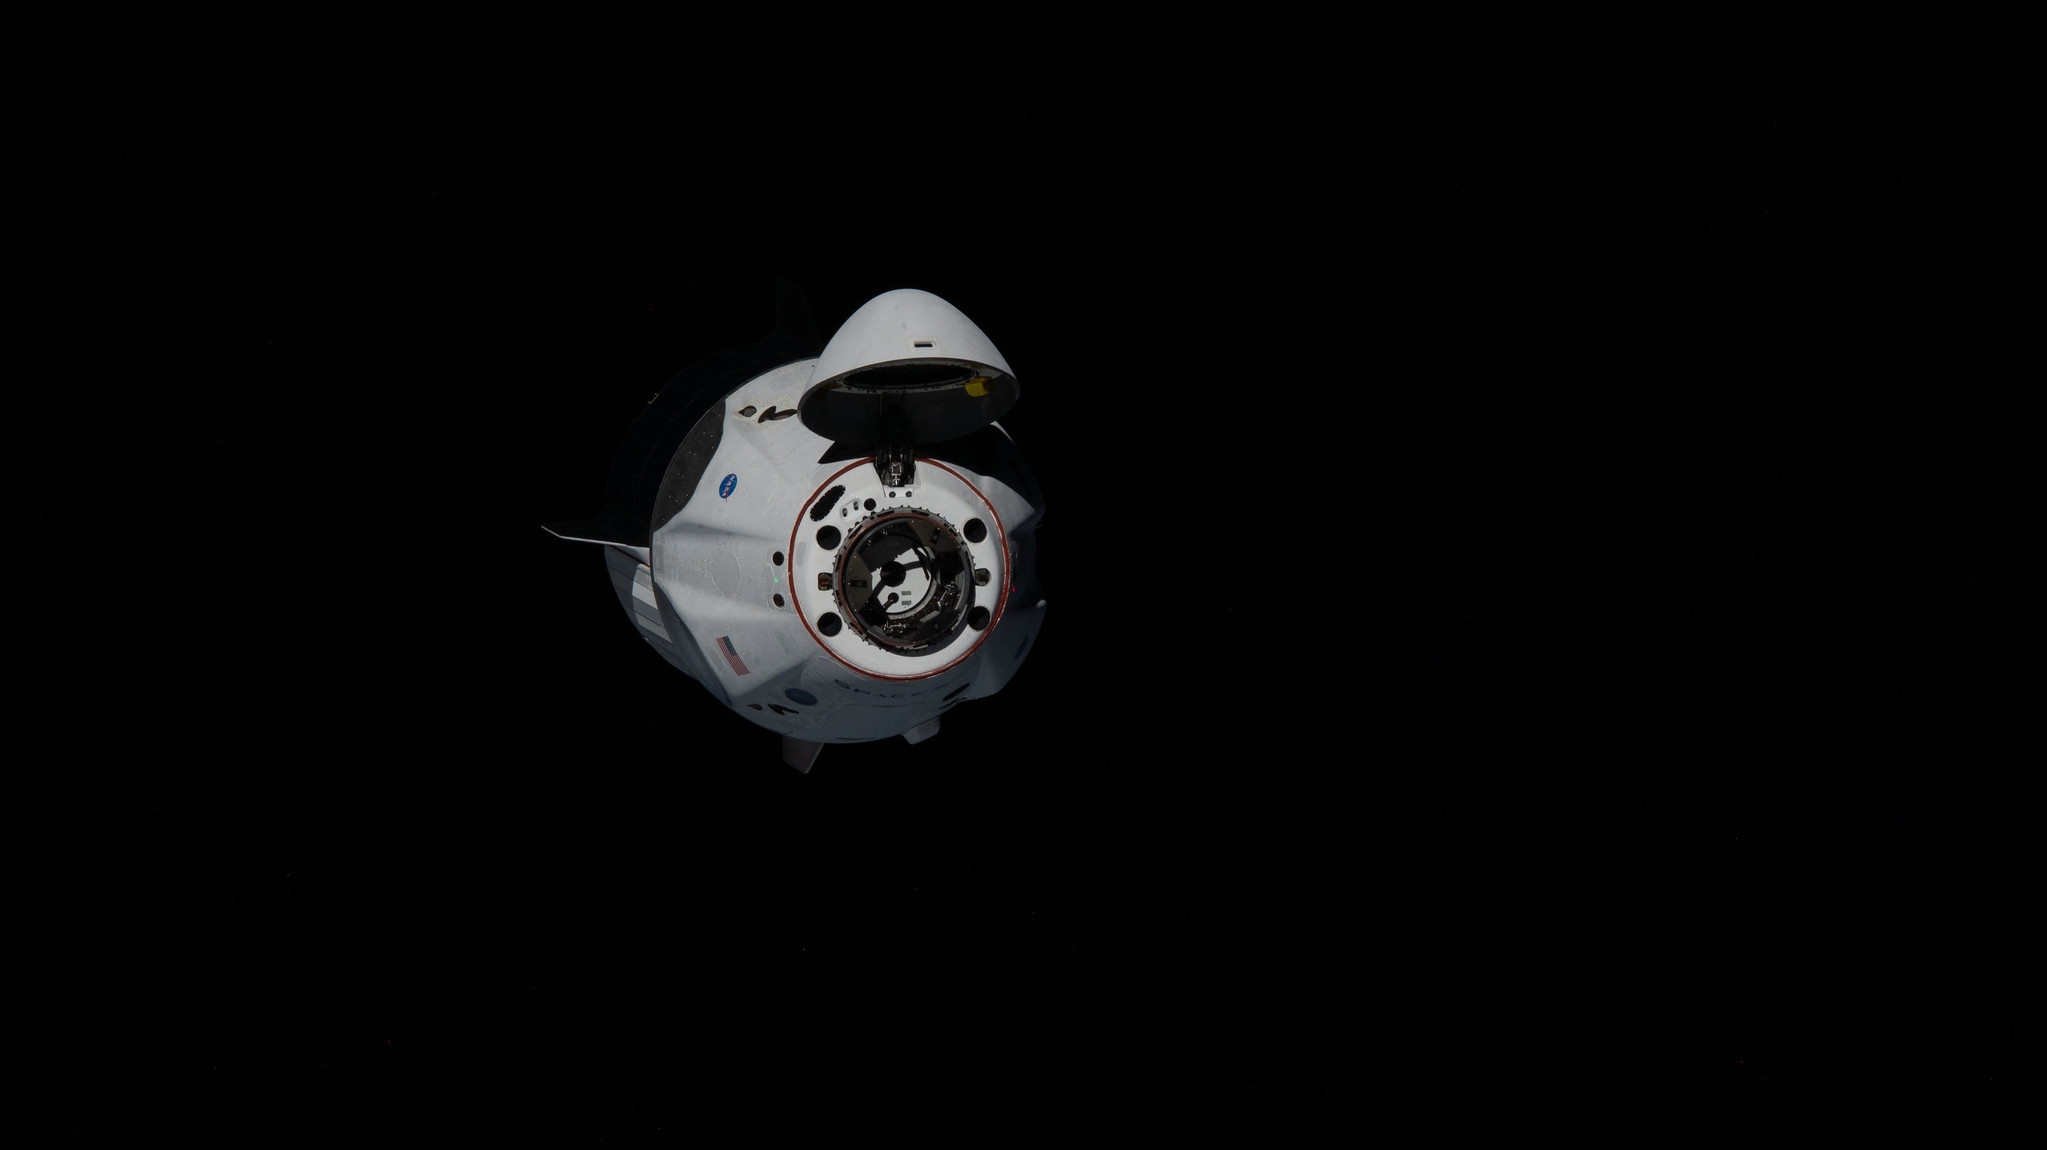 Політ Crew Dragon до SpaceX. Як це виглядало